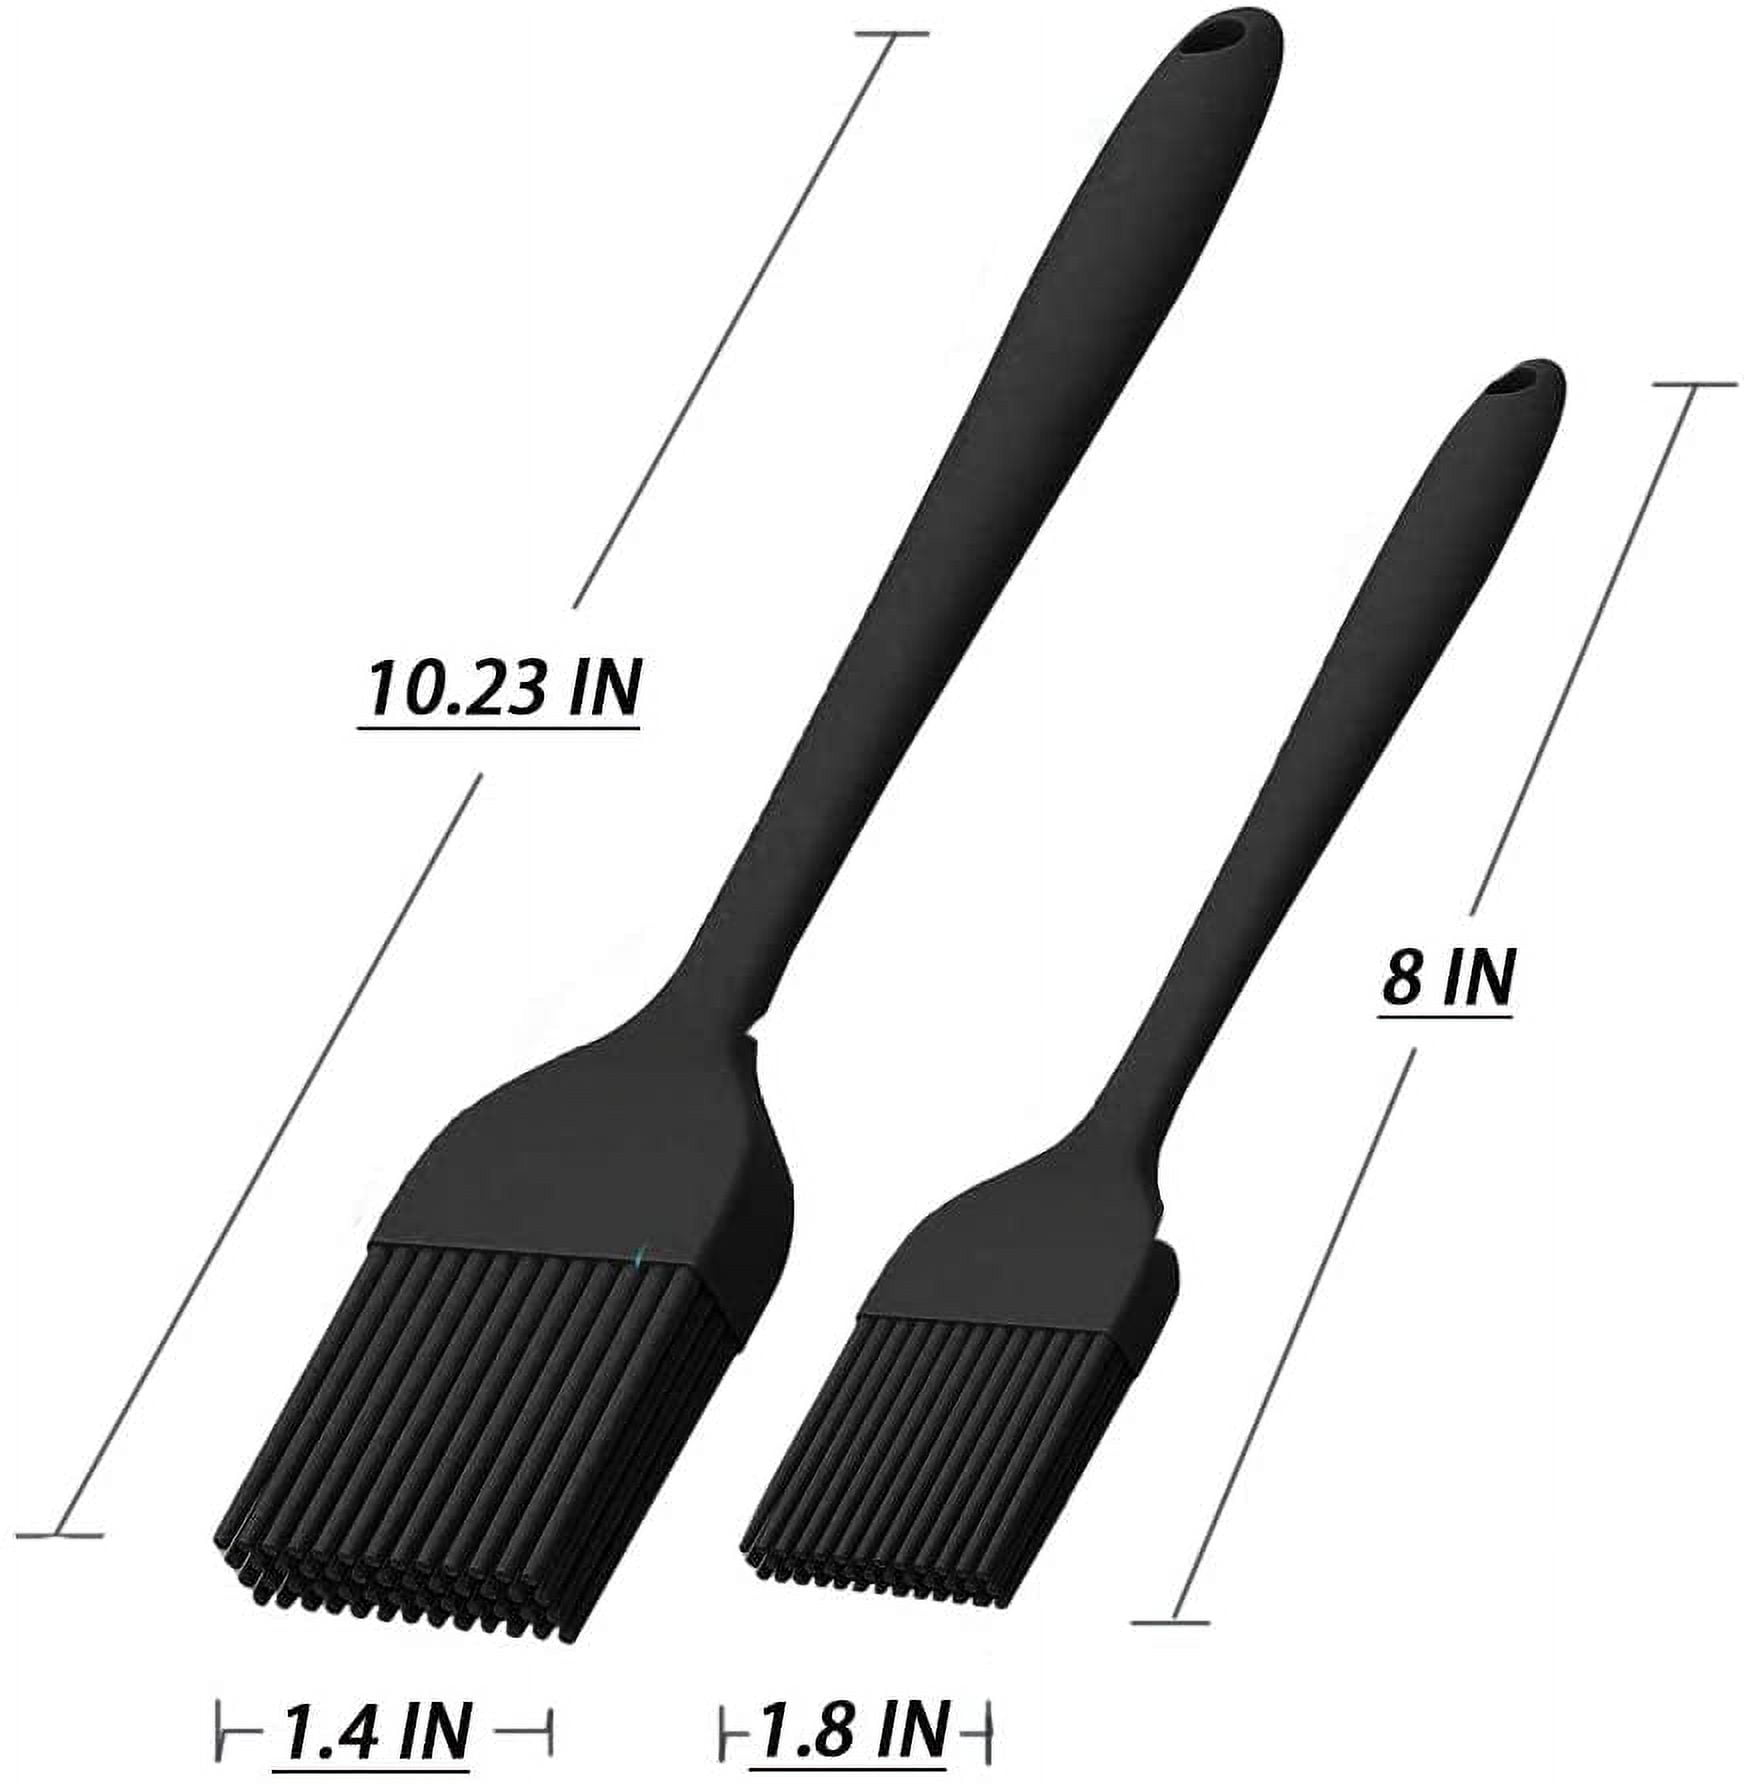 XMMSWDLA Silicone Basting Brush Set, Heat Resistant Pastry Brush